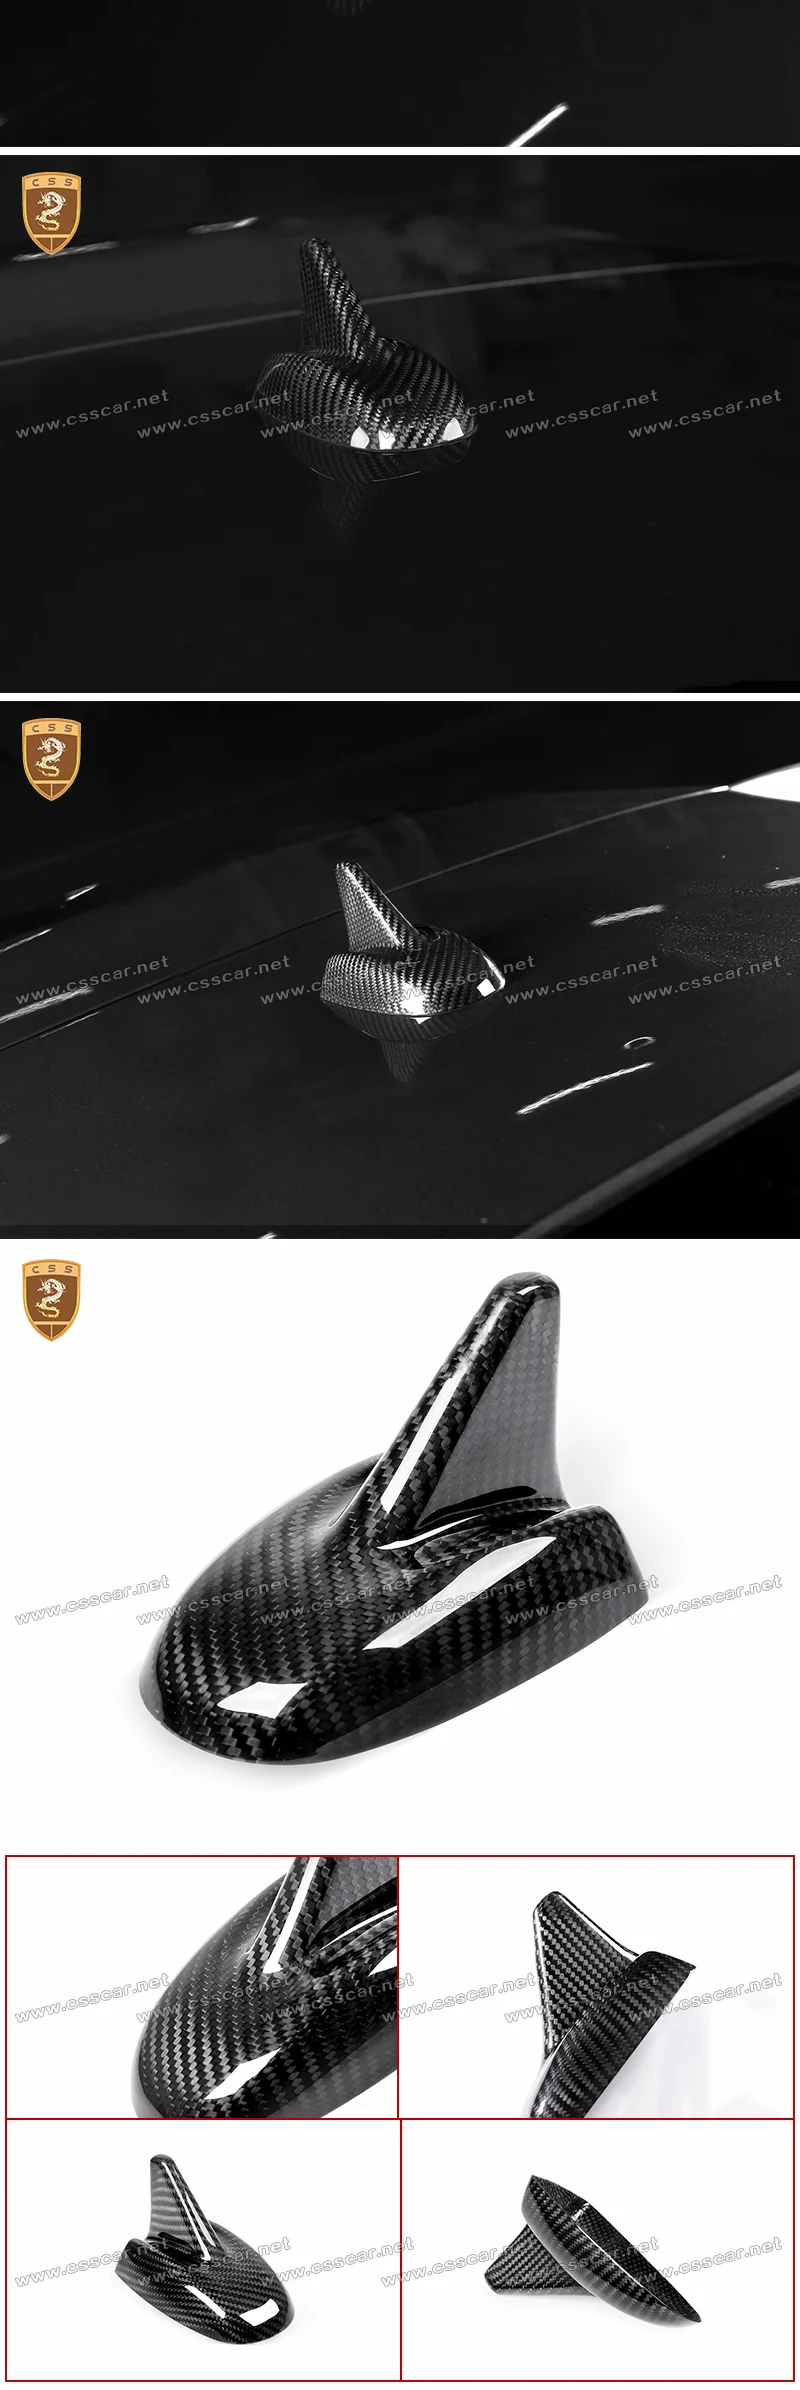 Углеродное волокно плавник акулы радио крыша антенна крышка отделка Подходит для Maserati Levante автомобиля Стайлинг автомобилей Аксессуары